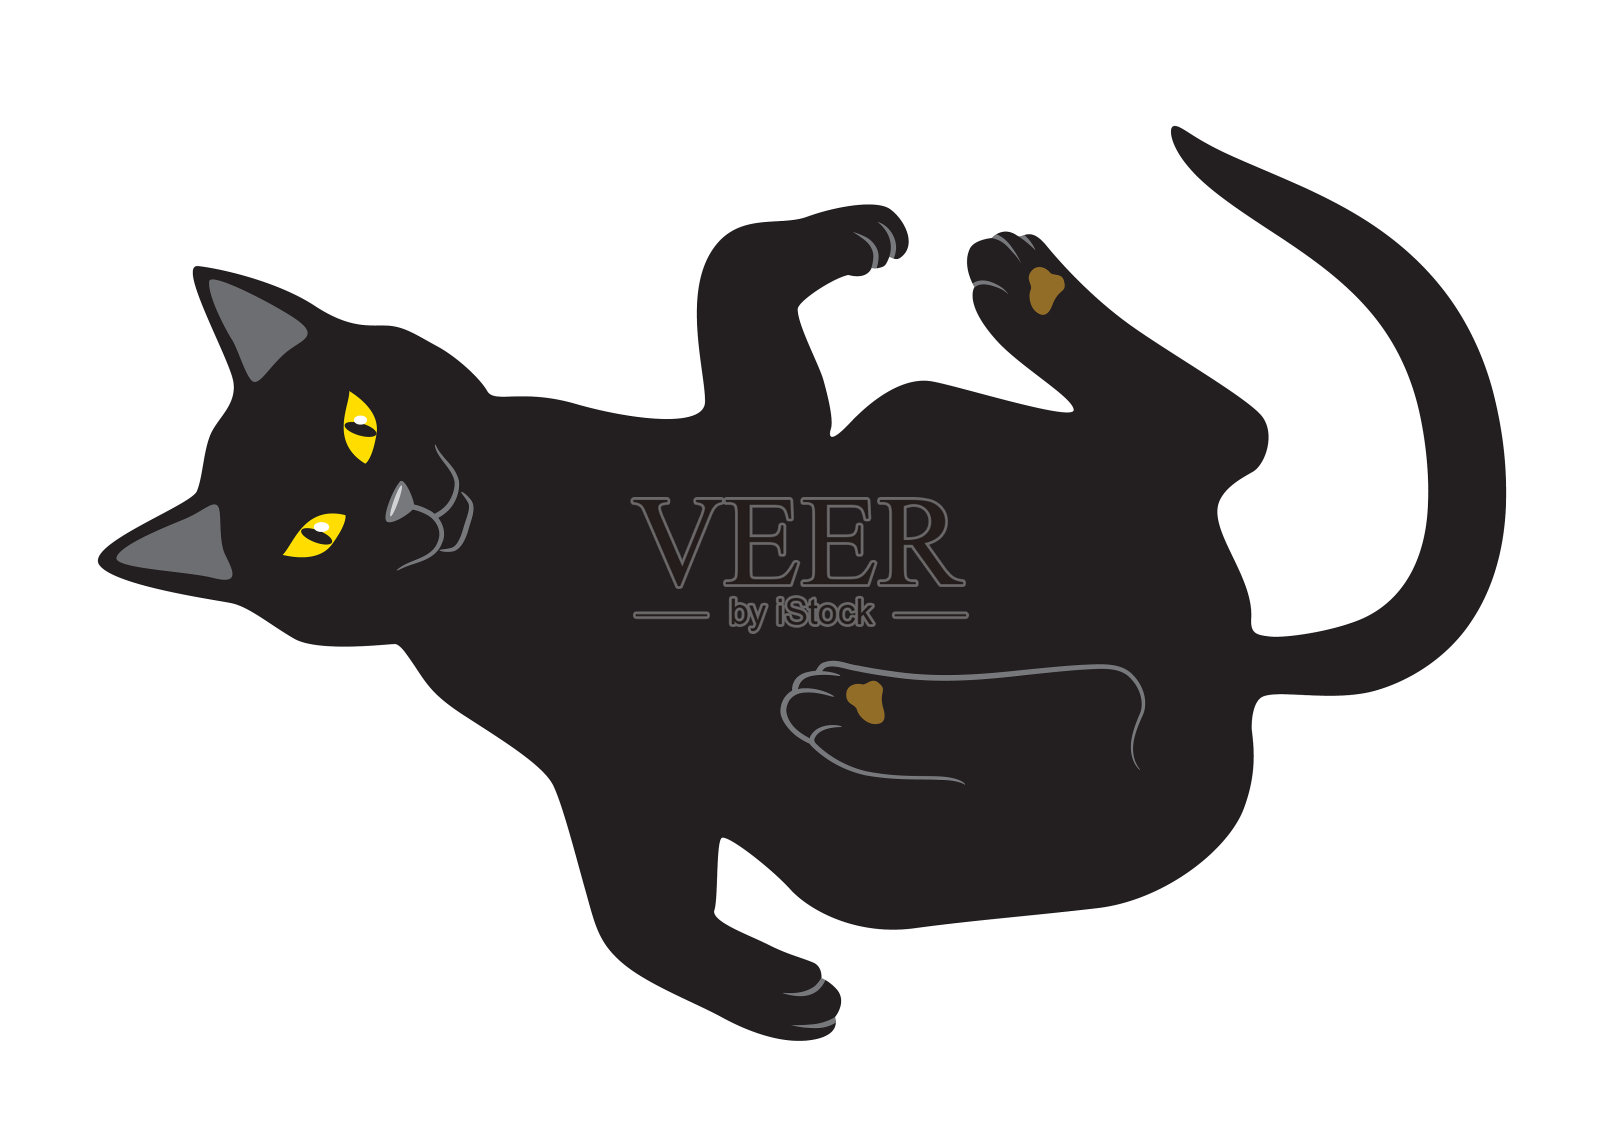 卡通黑貓圖案素材 | PNG和向量圖 | 透明背景圖片 | 免費下载 - Pngtree